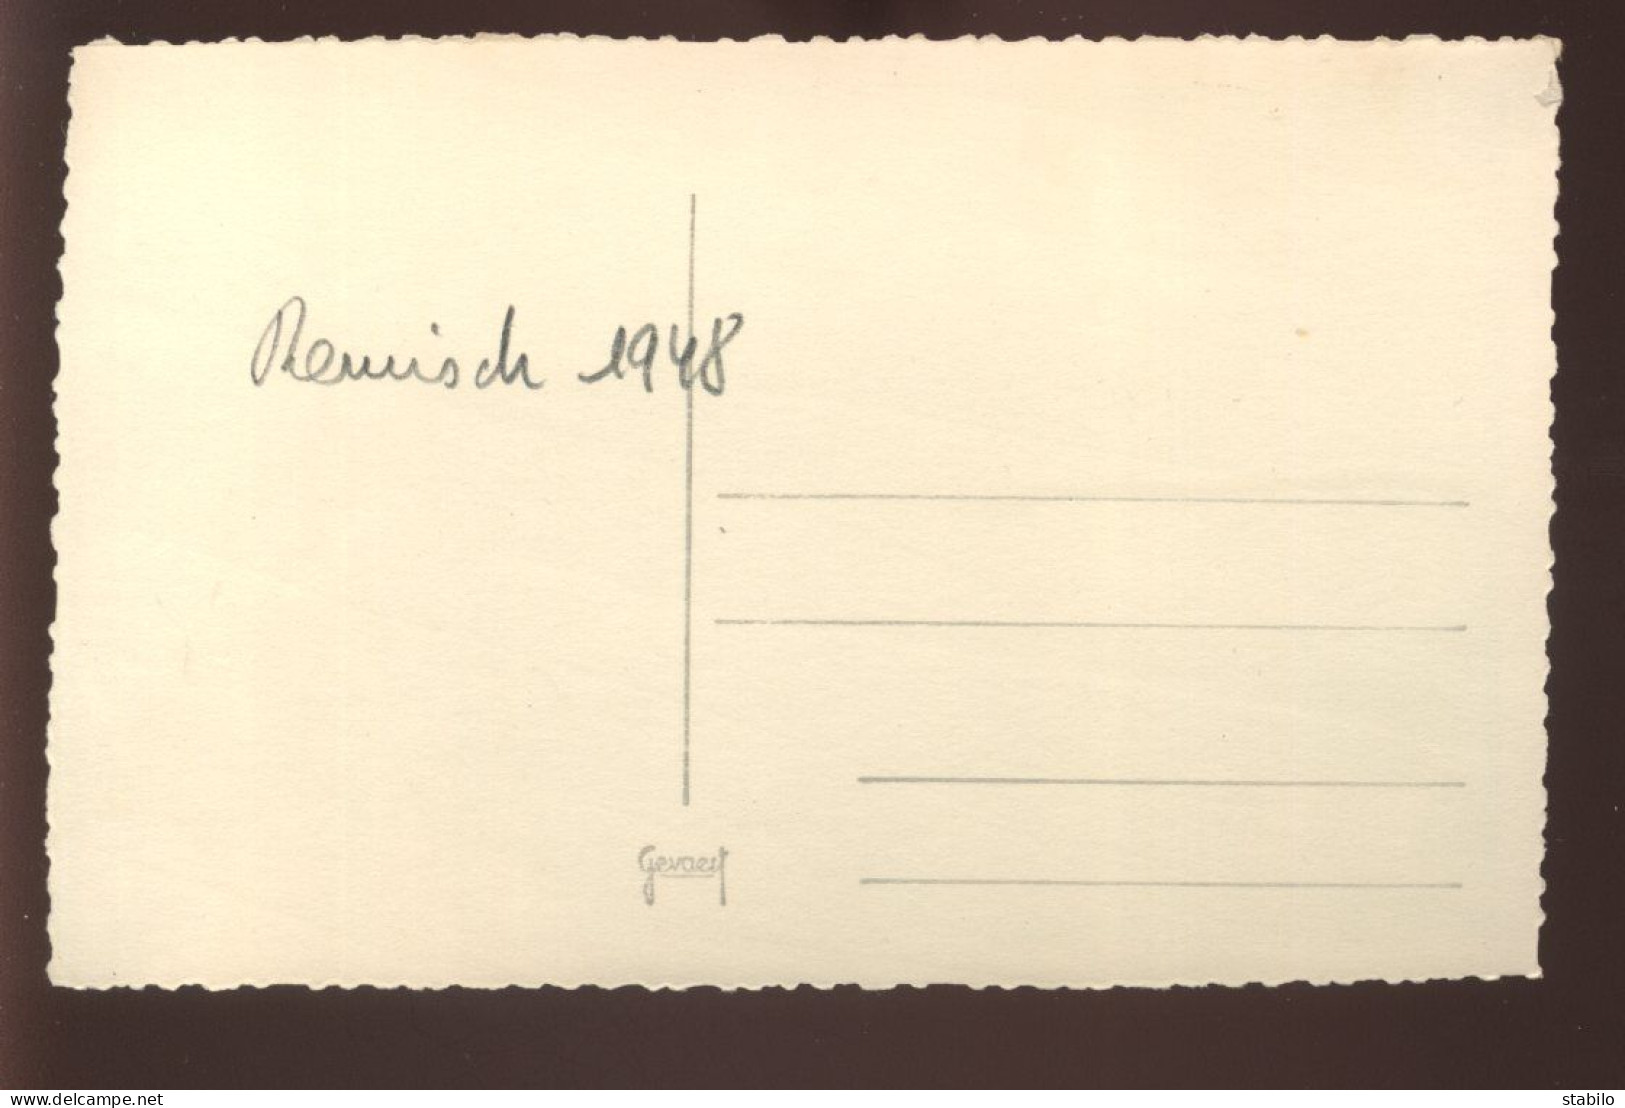 LUXEMBOURG - REMISCH - VENTE DE RAISINS - 1948 - FORMAT 13 X 8.5 CM - Orte